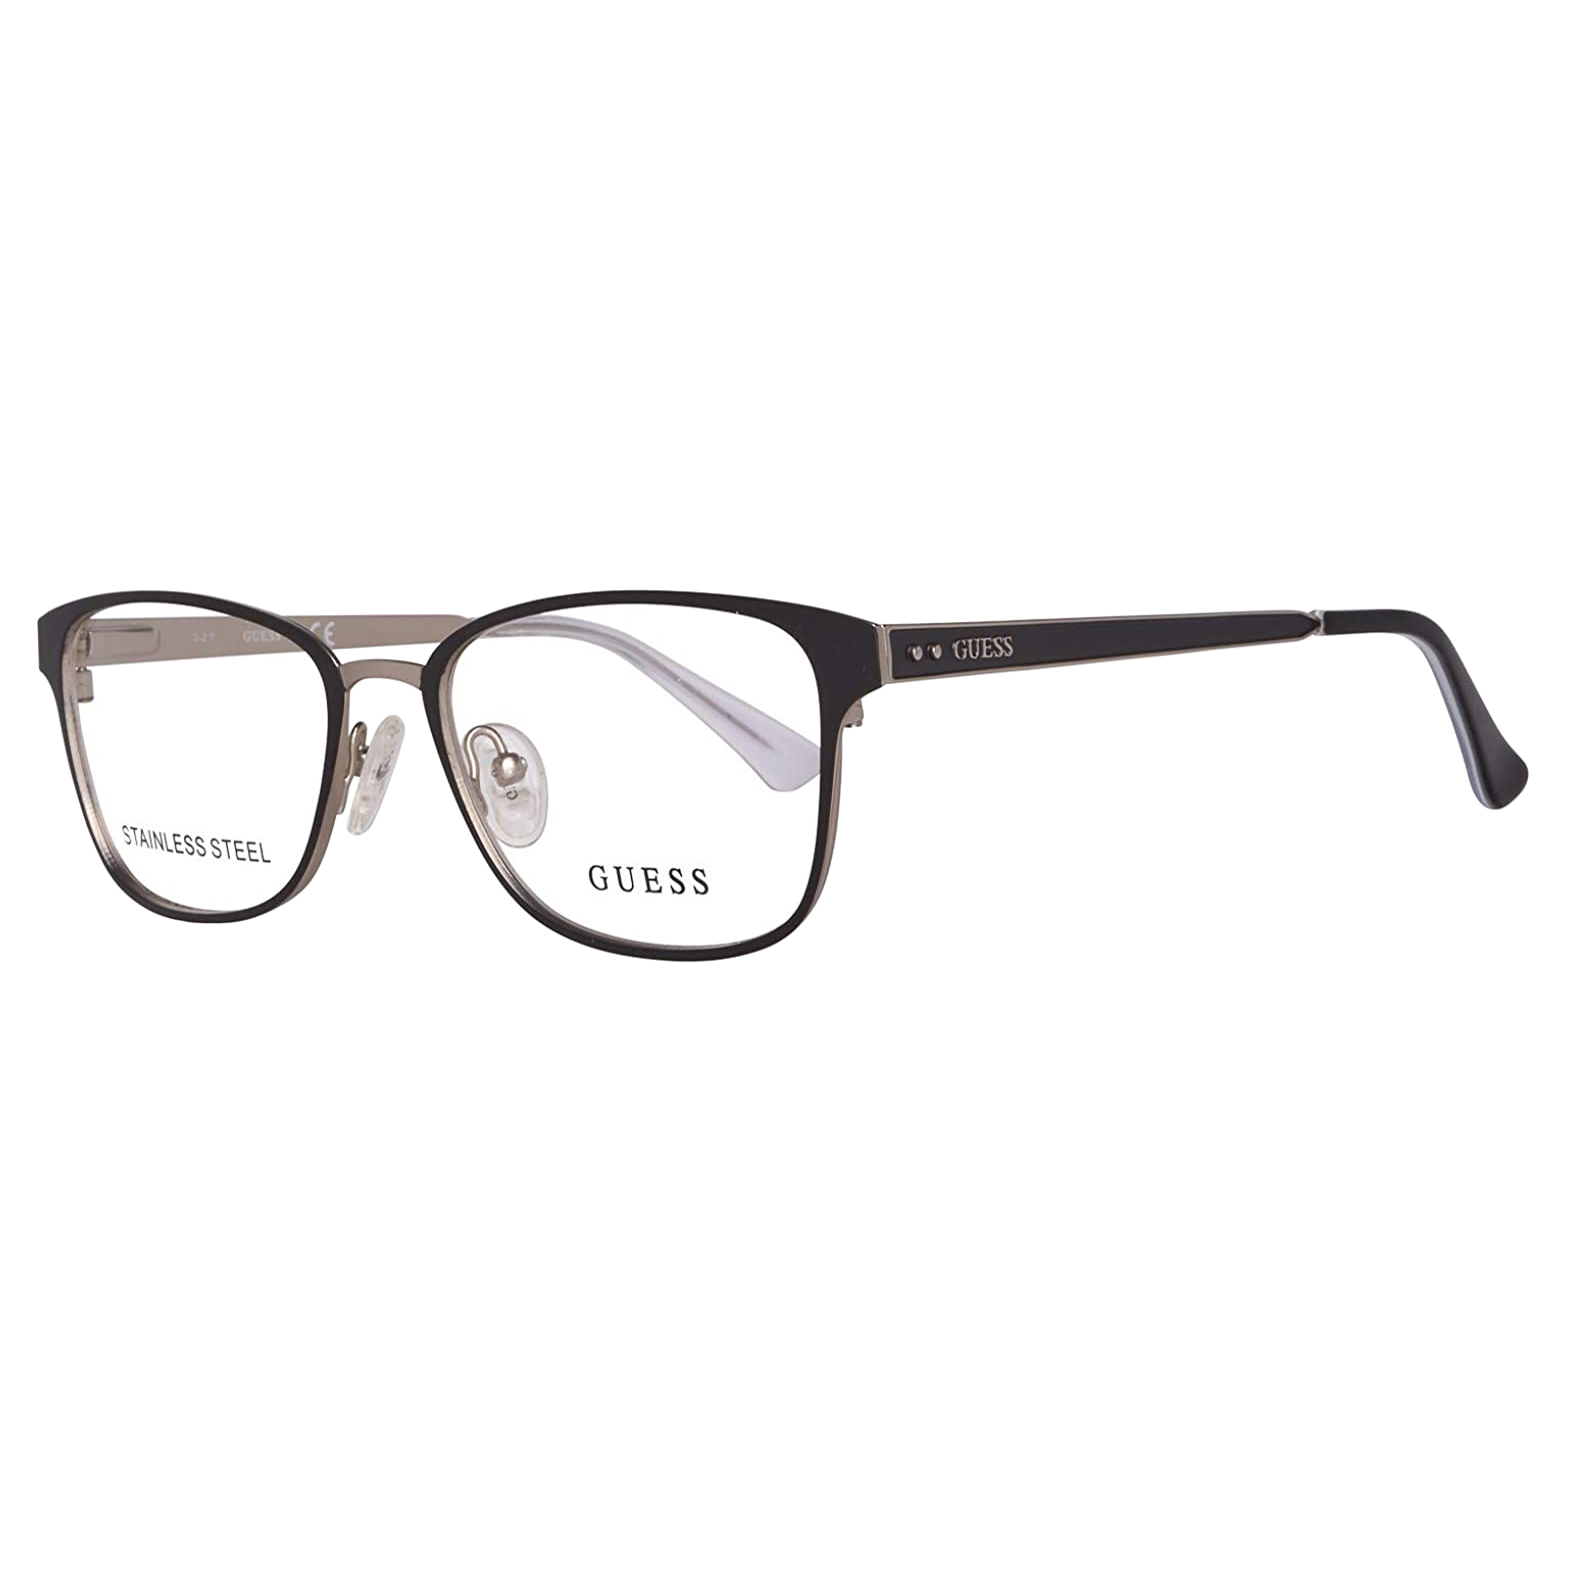 فریم عینک طبی زنانه گس مدل GU2550002 -  - 4